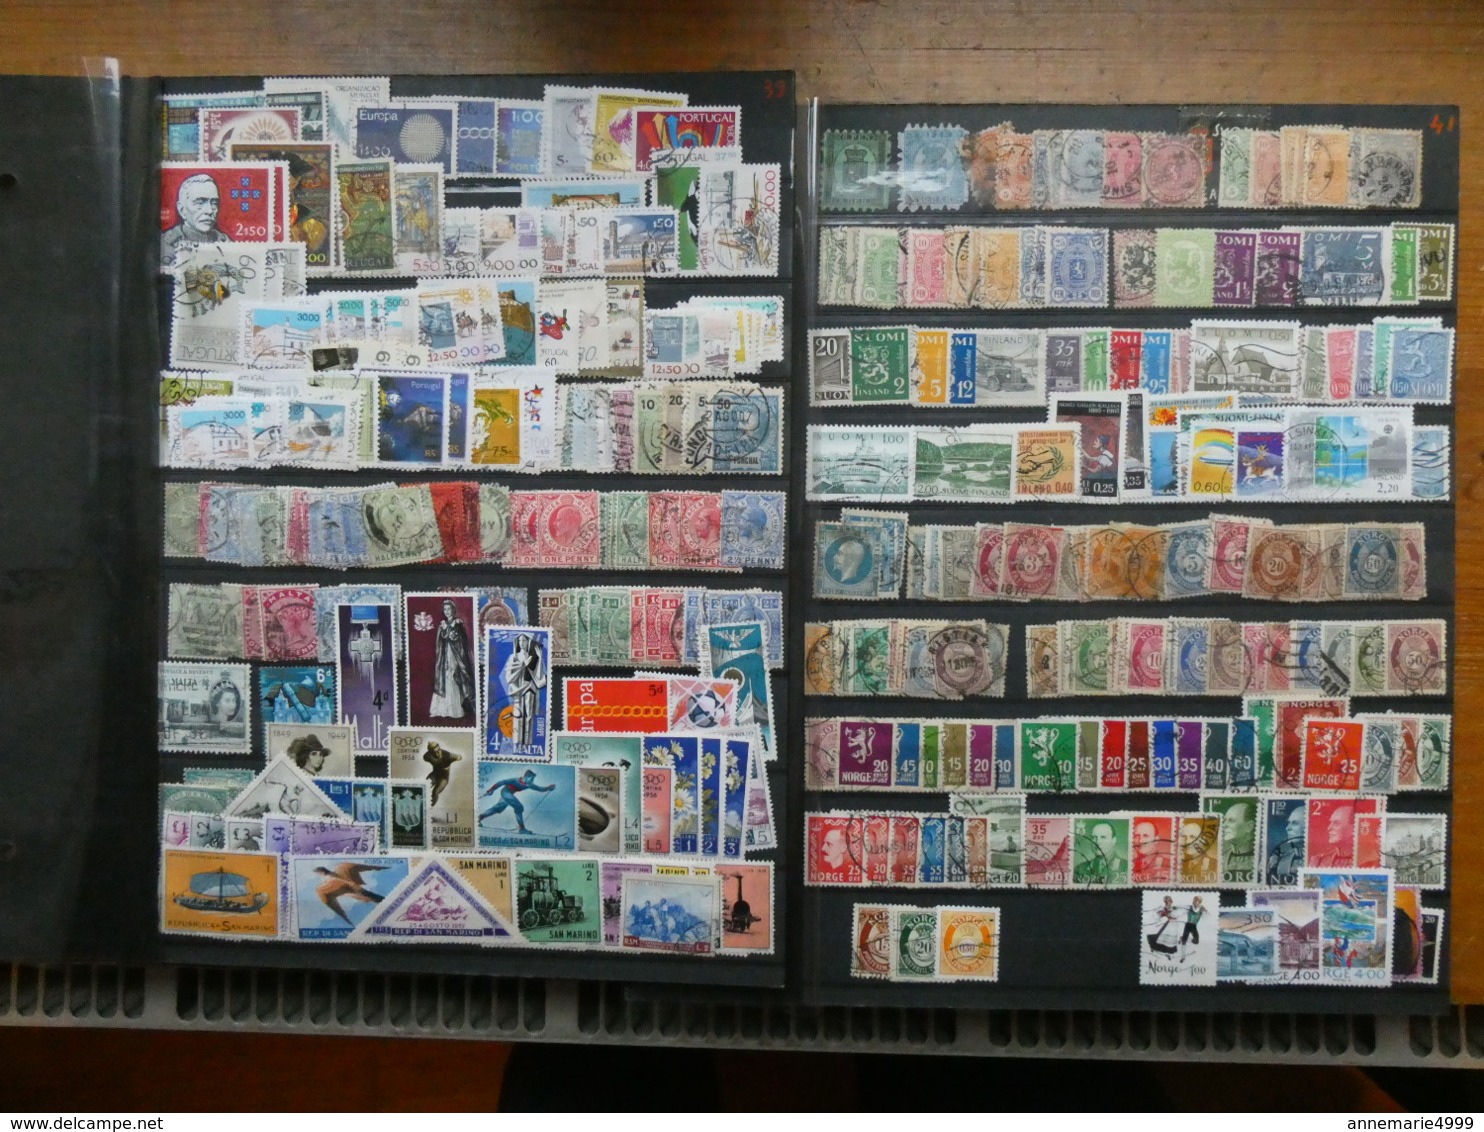 EUROPE  Collection-accumulation tous pays, tous états, toutes périodes dont anciens Environ 4000 timbres